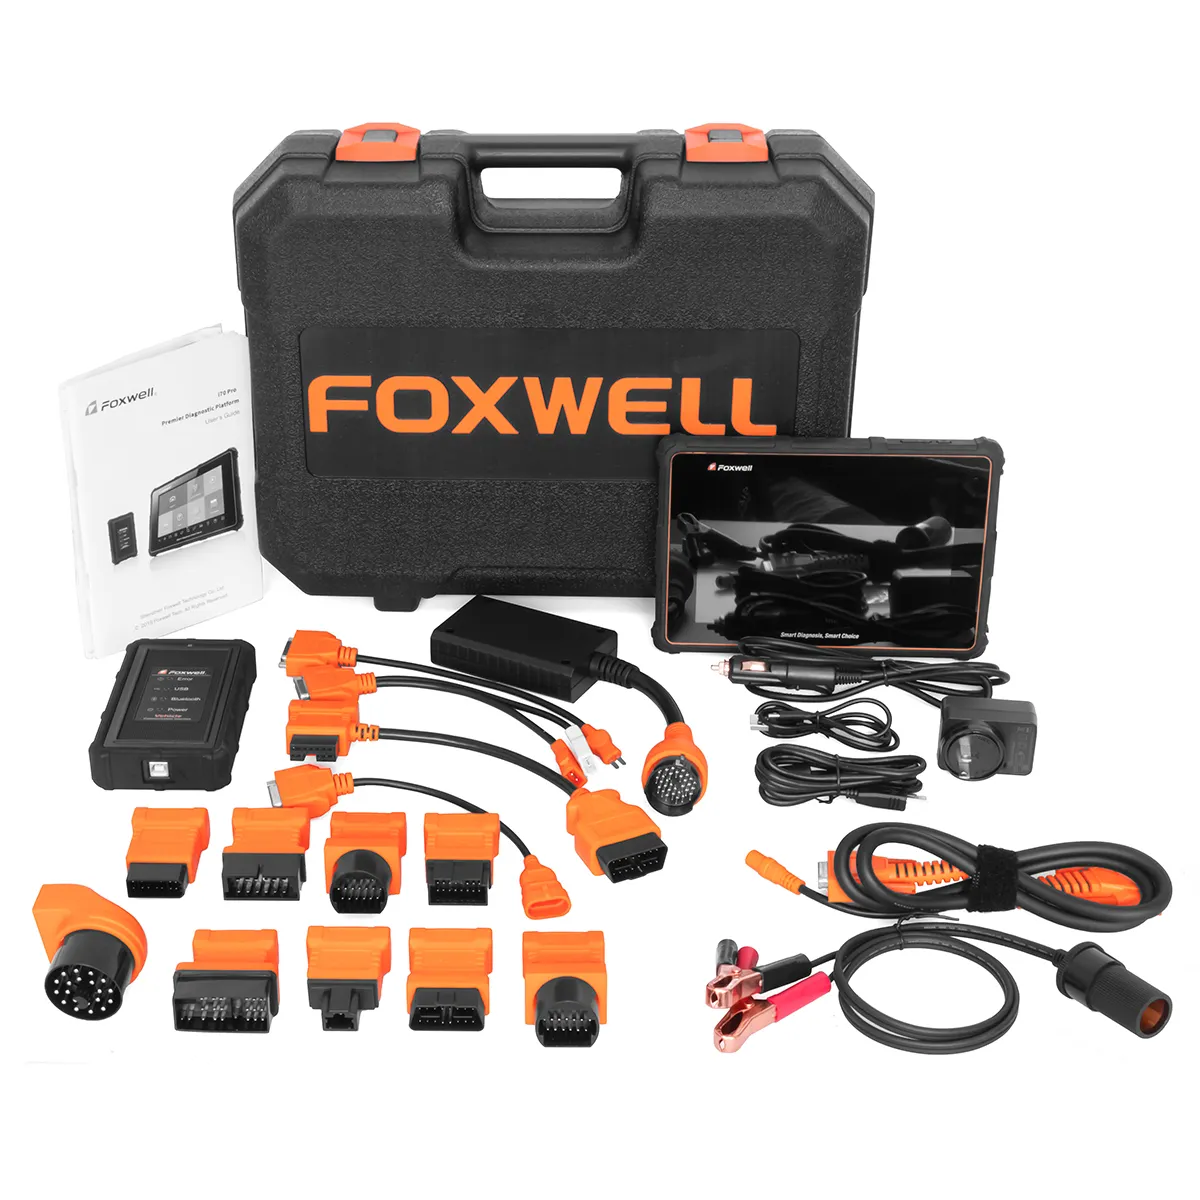 Foxwell-Tableta de diagnóstico de 8 pulgadas, compatible con todos los sistemas, programación de codificación con conexión Bluetooth, escáner OBD